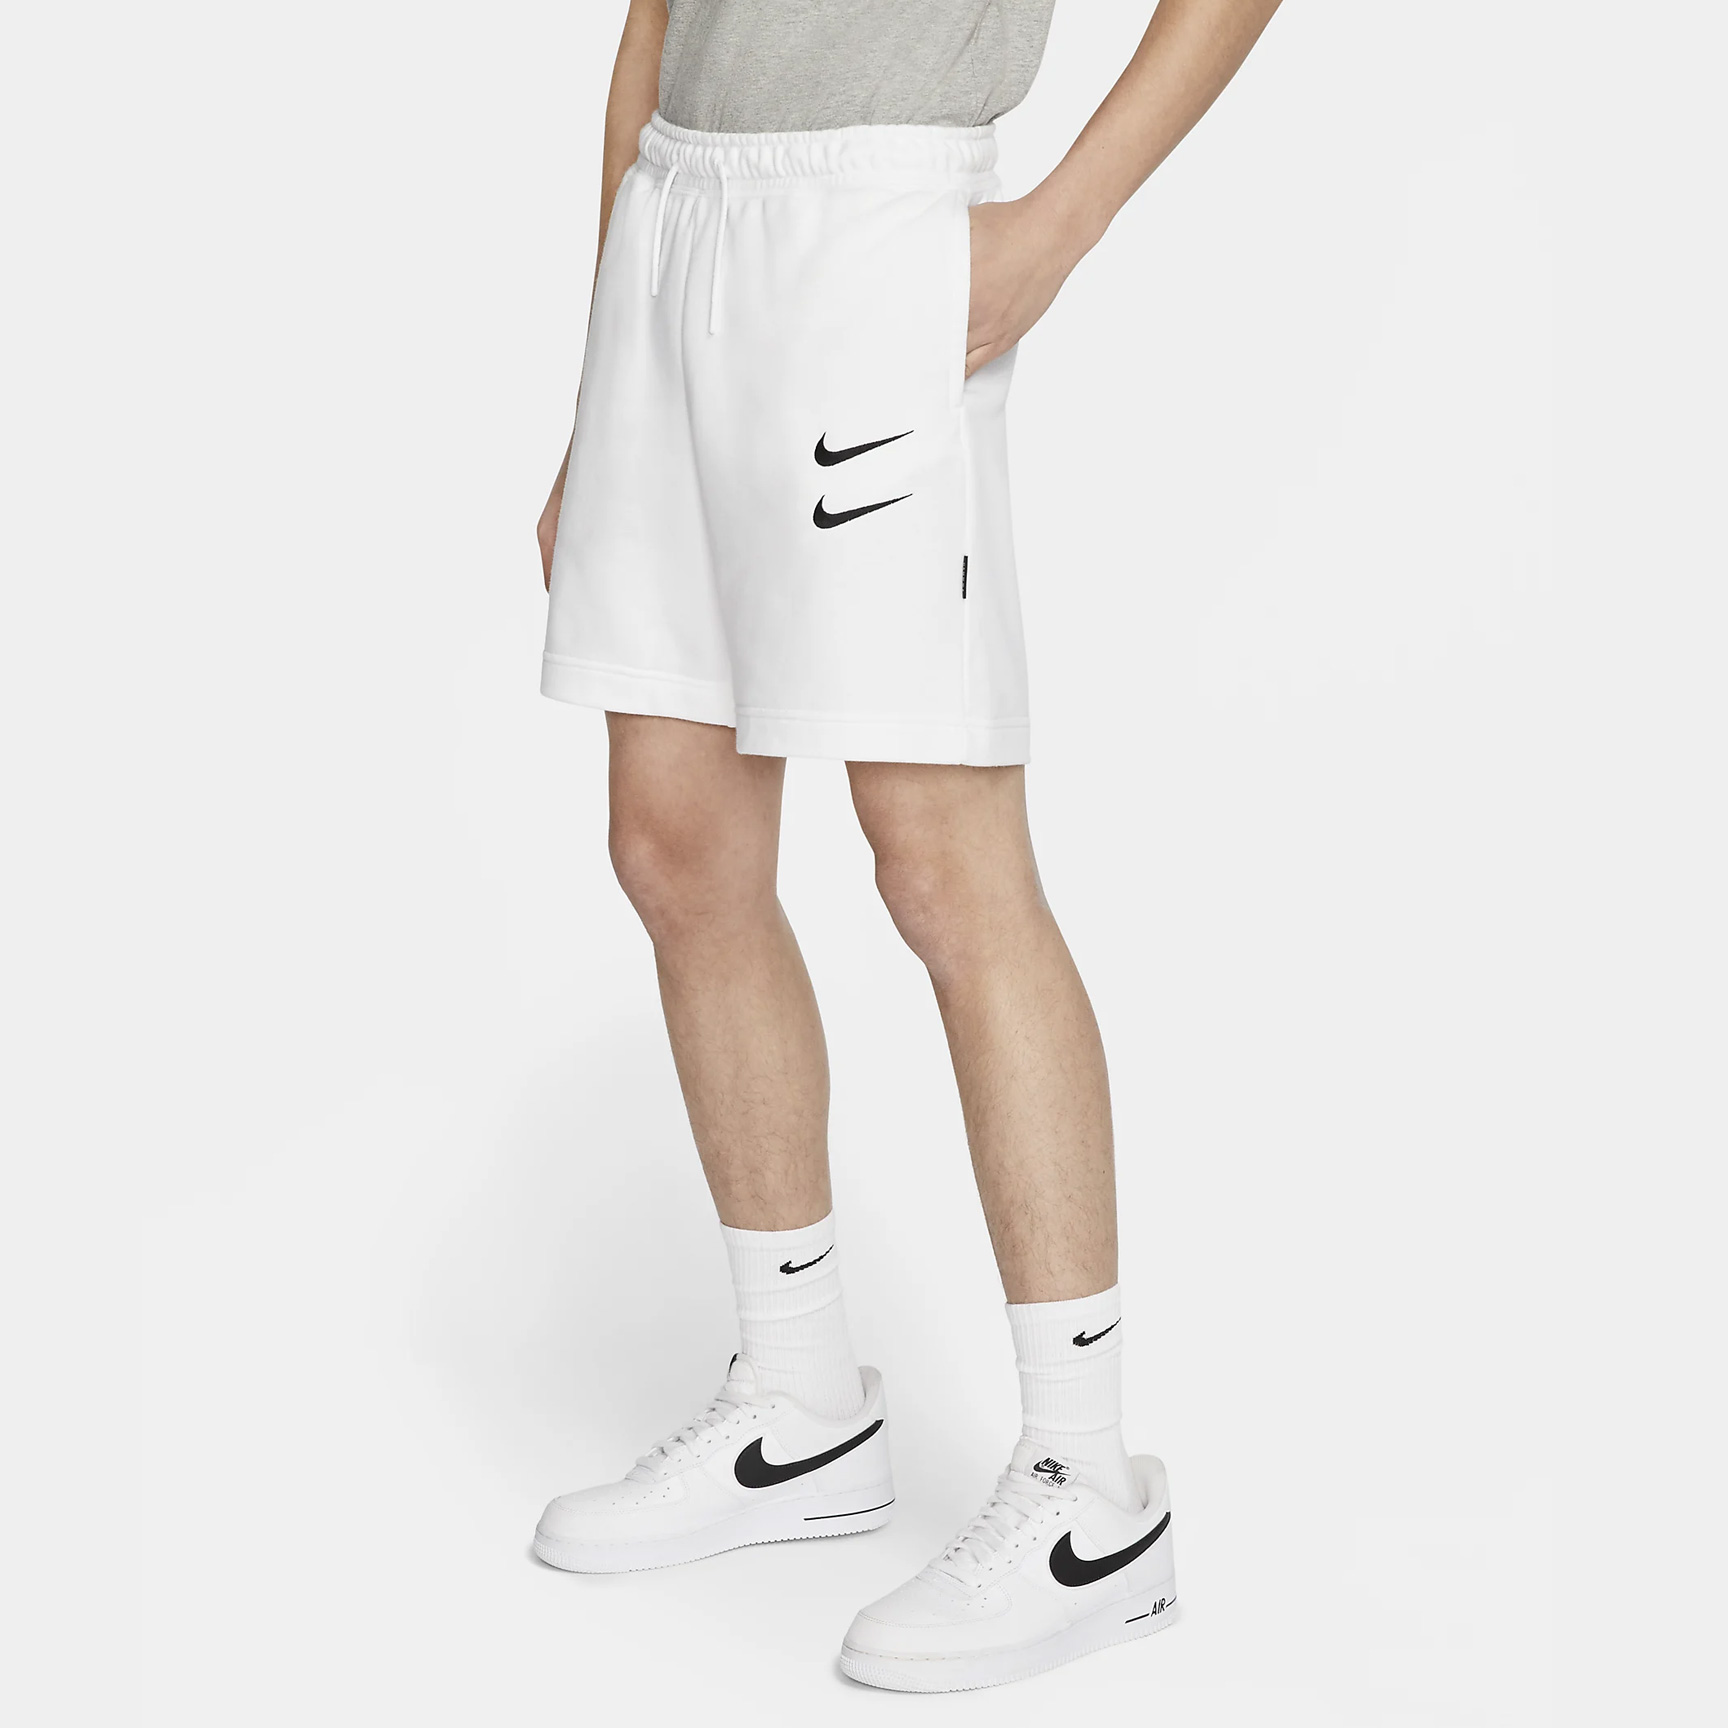 Soldes surprises Nike : Notre sélection des meilleurs produits - WAVE®